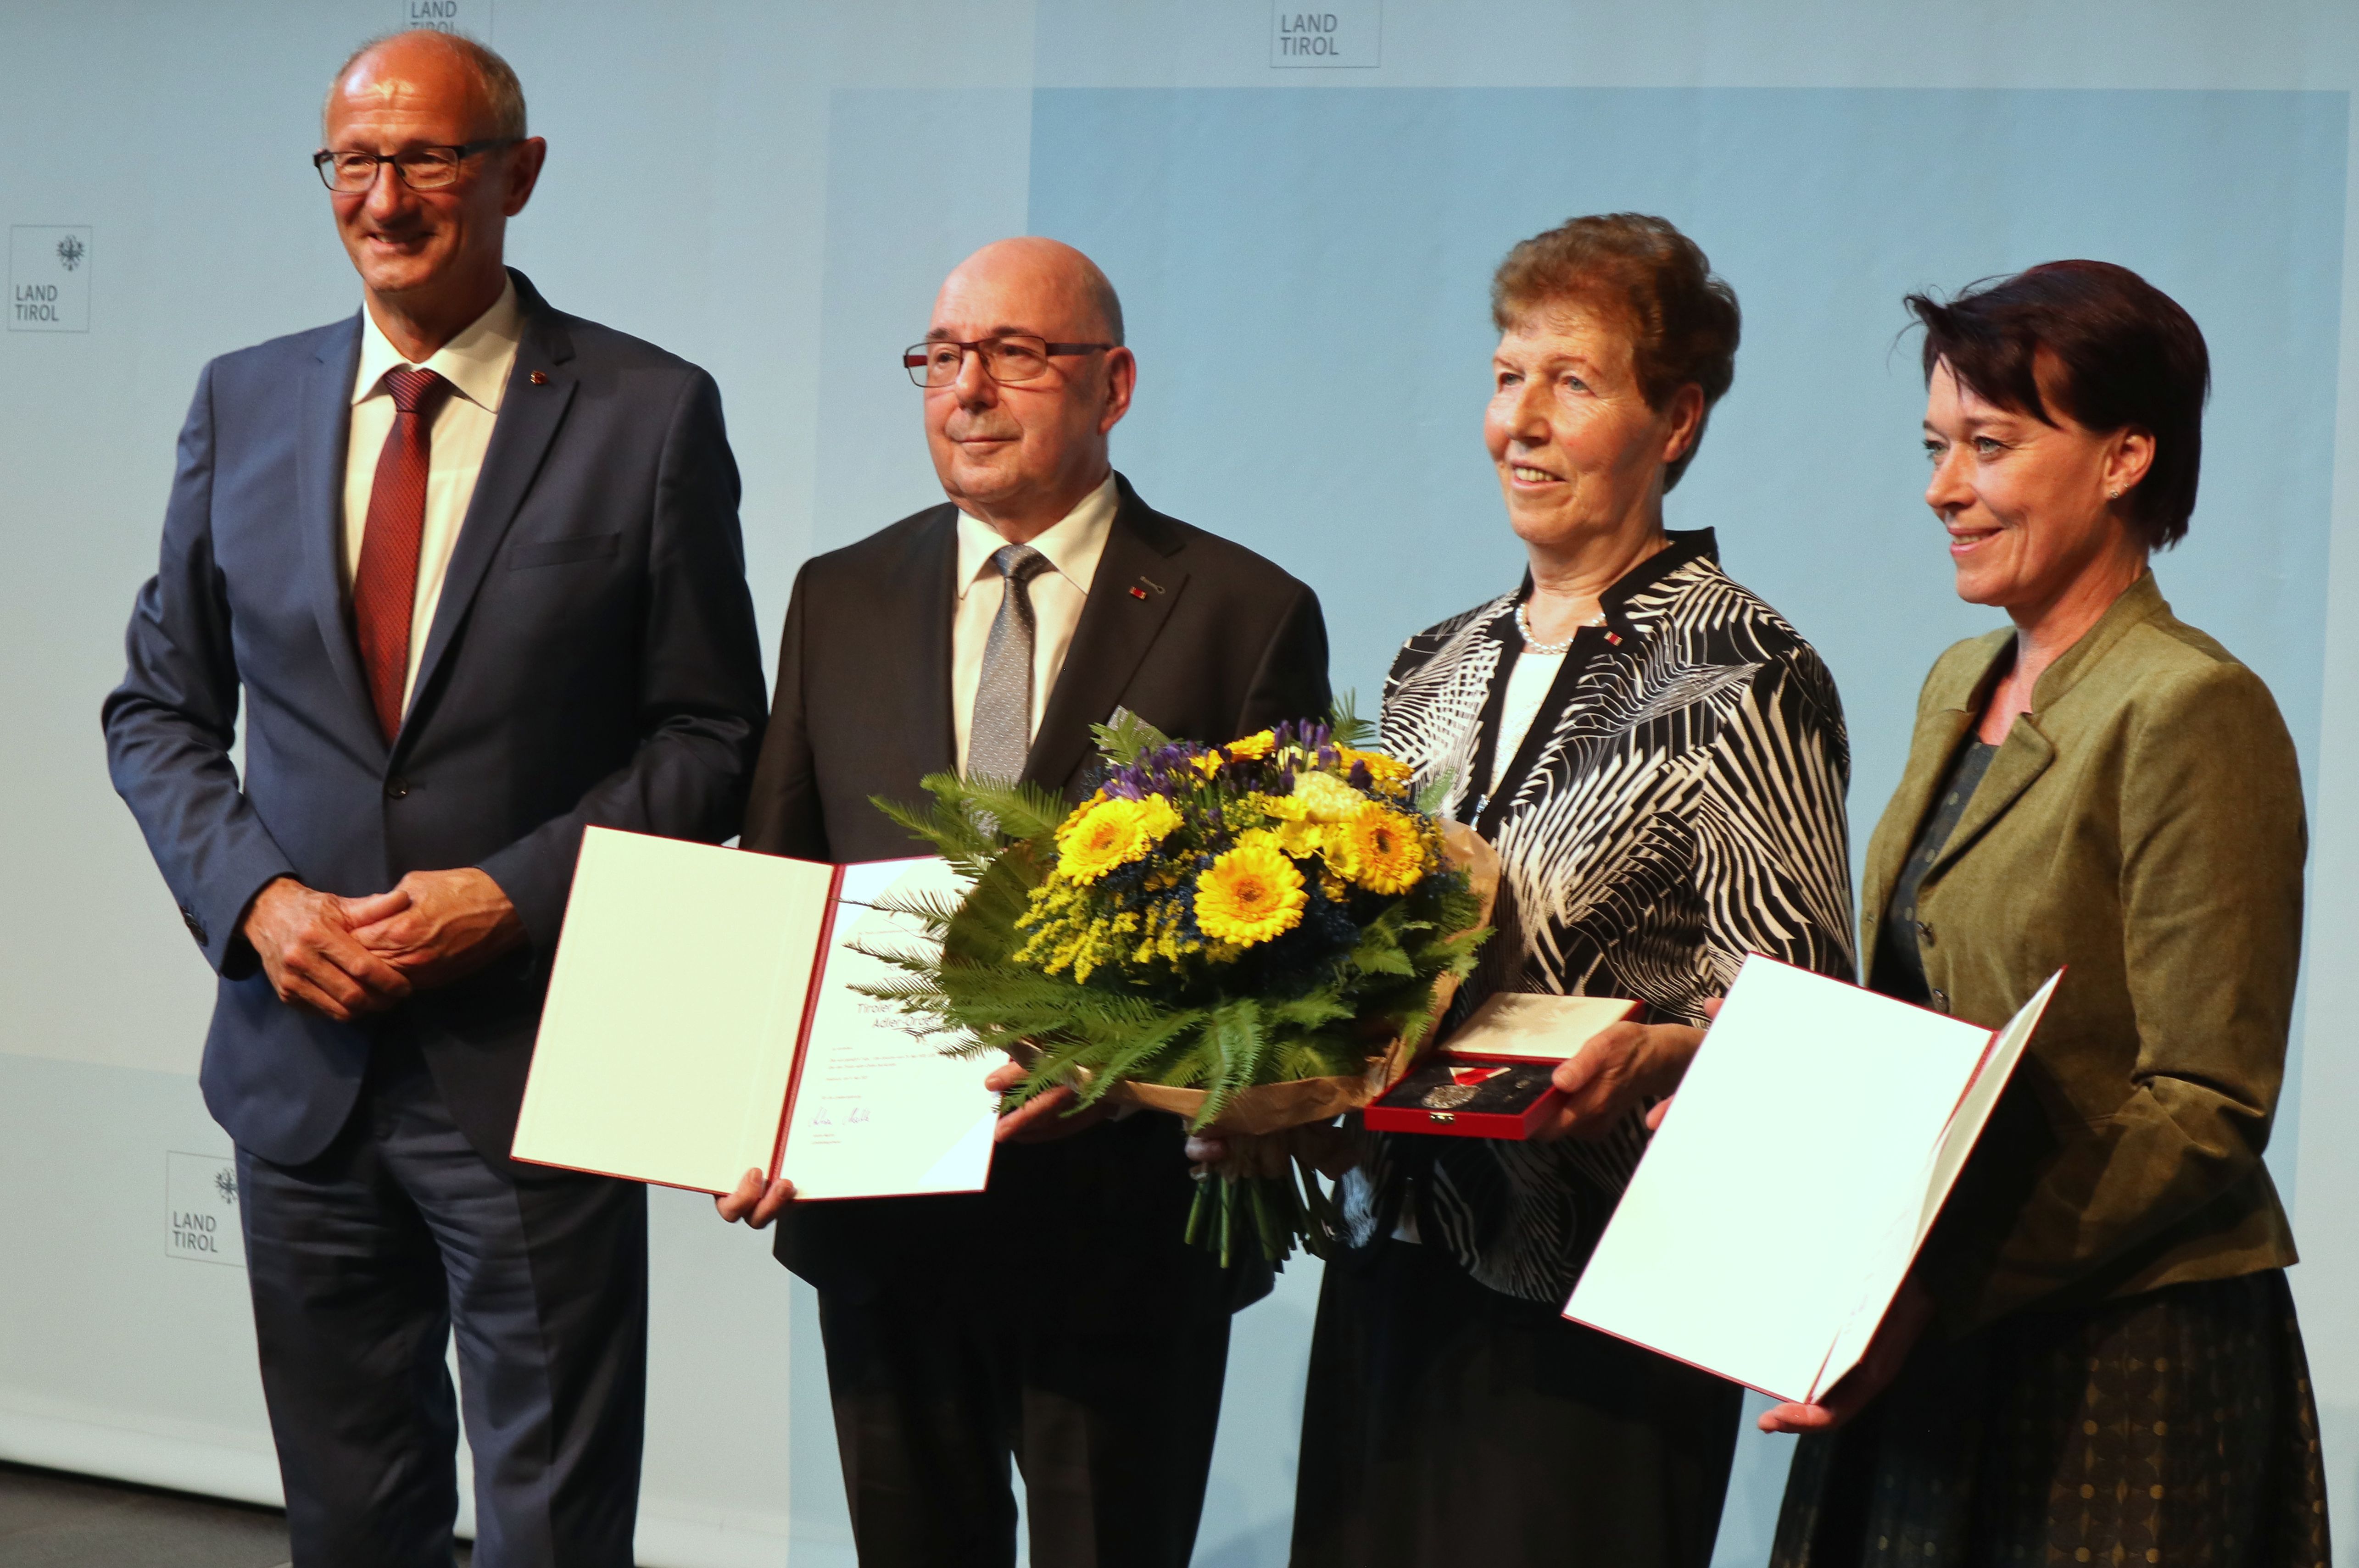 Verleihung Tiroler Adler Orden - 09.05.2023 - LH Mattle, Helga + Horst Bast, LTPin Ledl-Rossmann